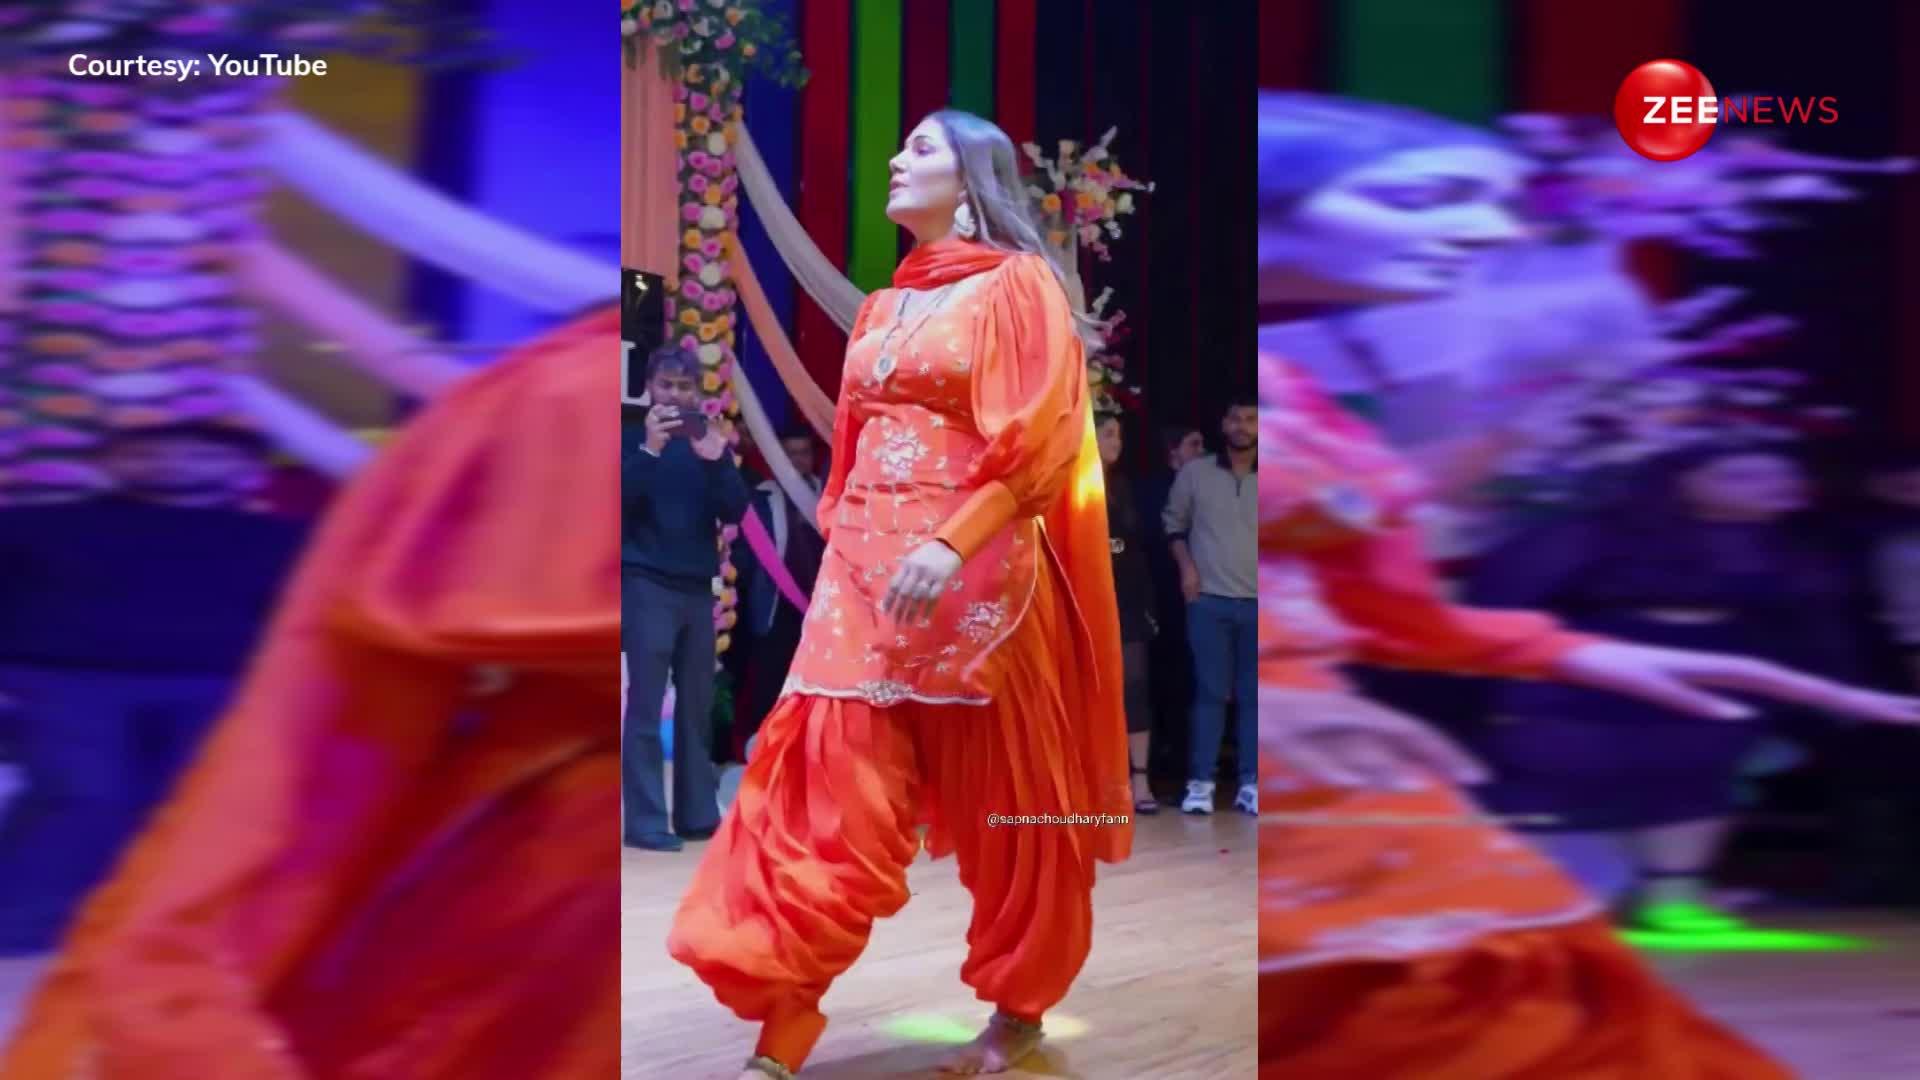 लाल सूट पहन सपना चौधरी ने किया 'दिल्ली में करता बदमाशी' पर गदर डांस, बिना पलक झपकाए देखते रहे लोग